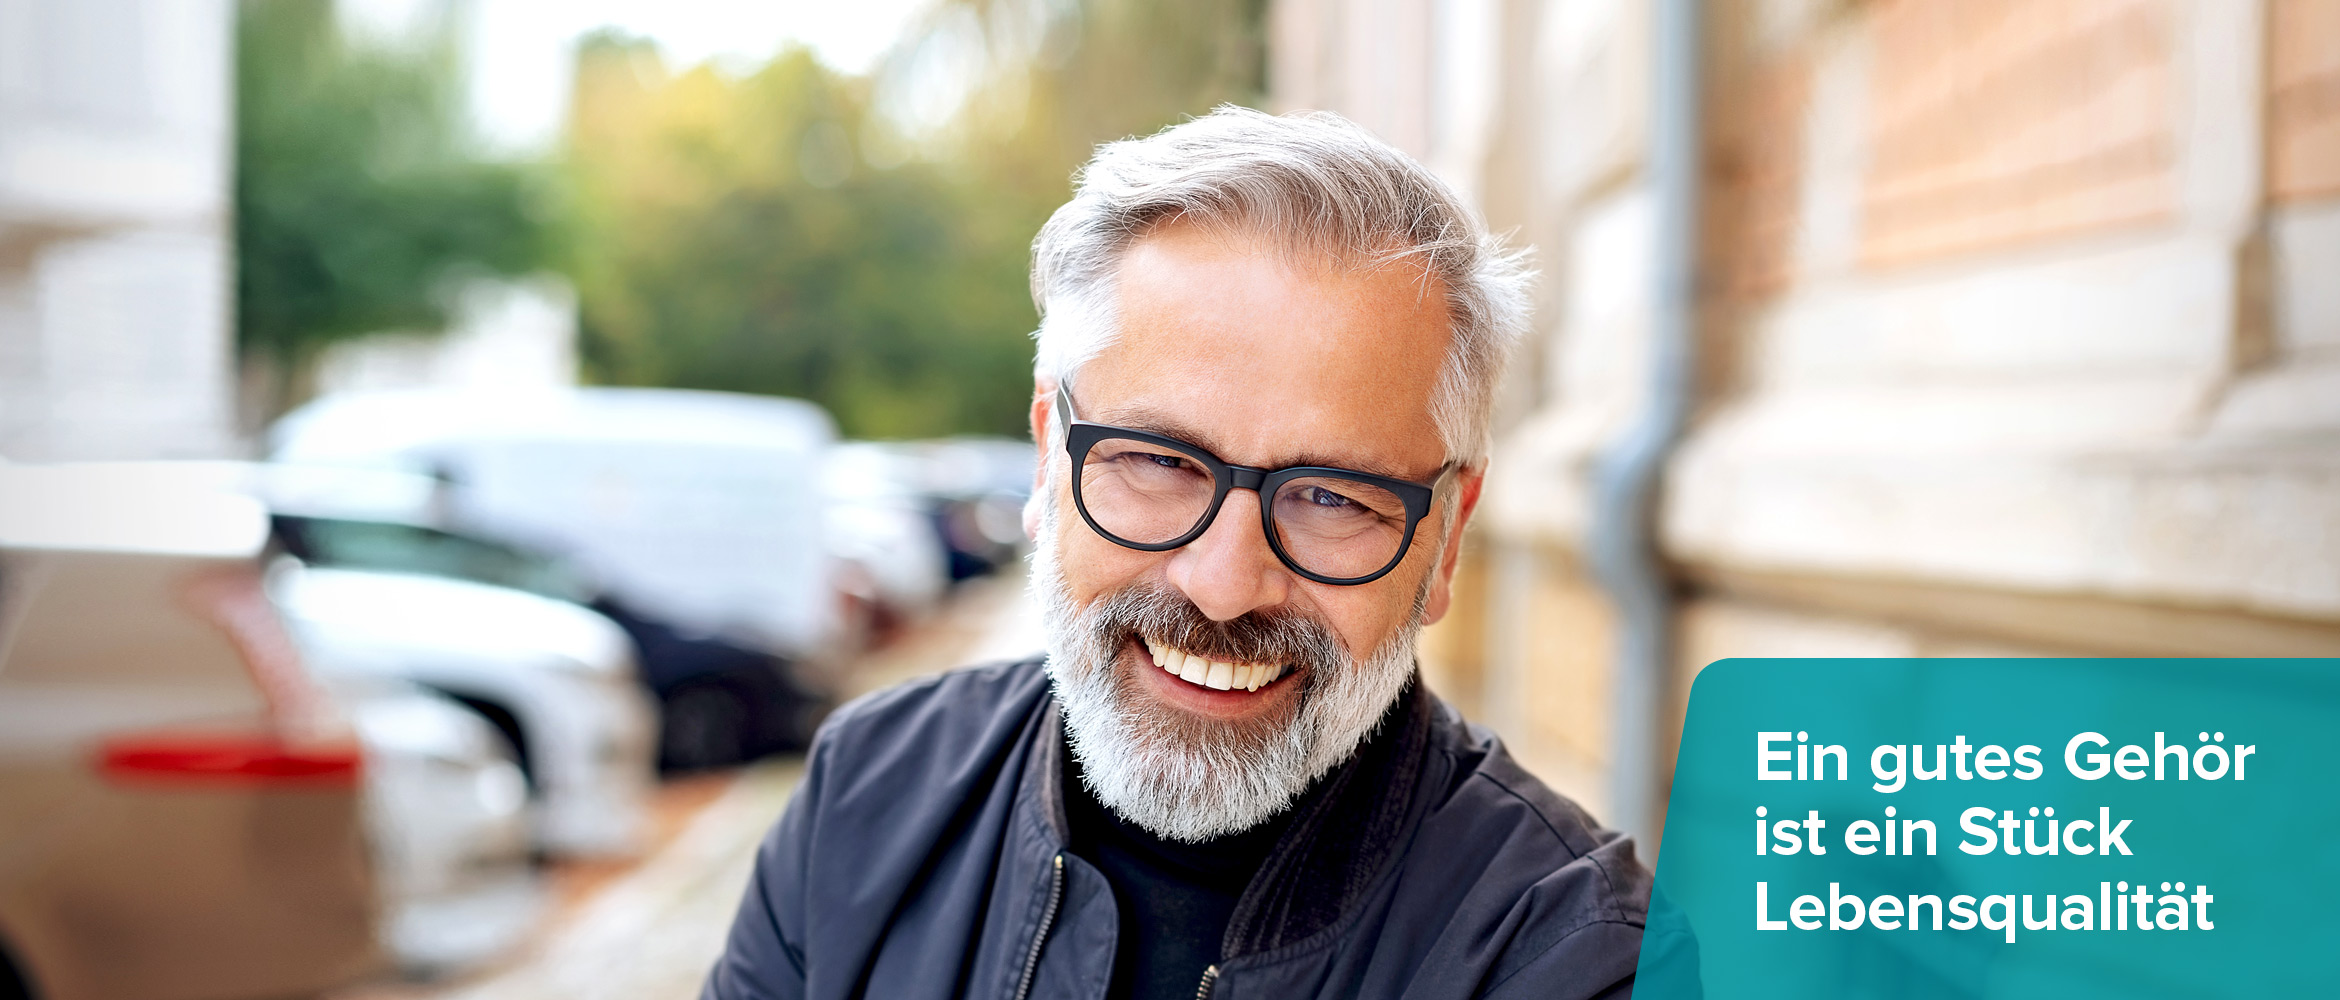 Ein fröhlicher Mann mit grauem Bart und Brille lächelt in die Kamera, auf der rechten Seite steht 'Ein gutes Gehör ist ein Stück Lebensqualität' über einem türkisen Banner.